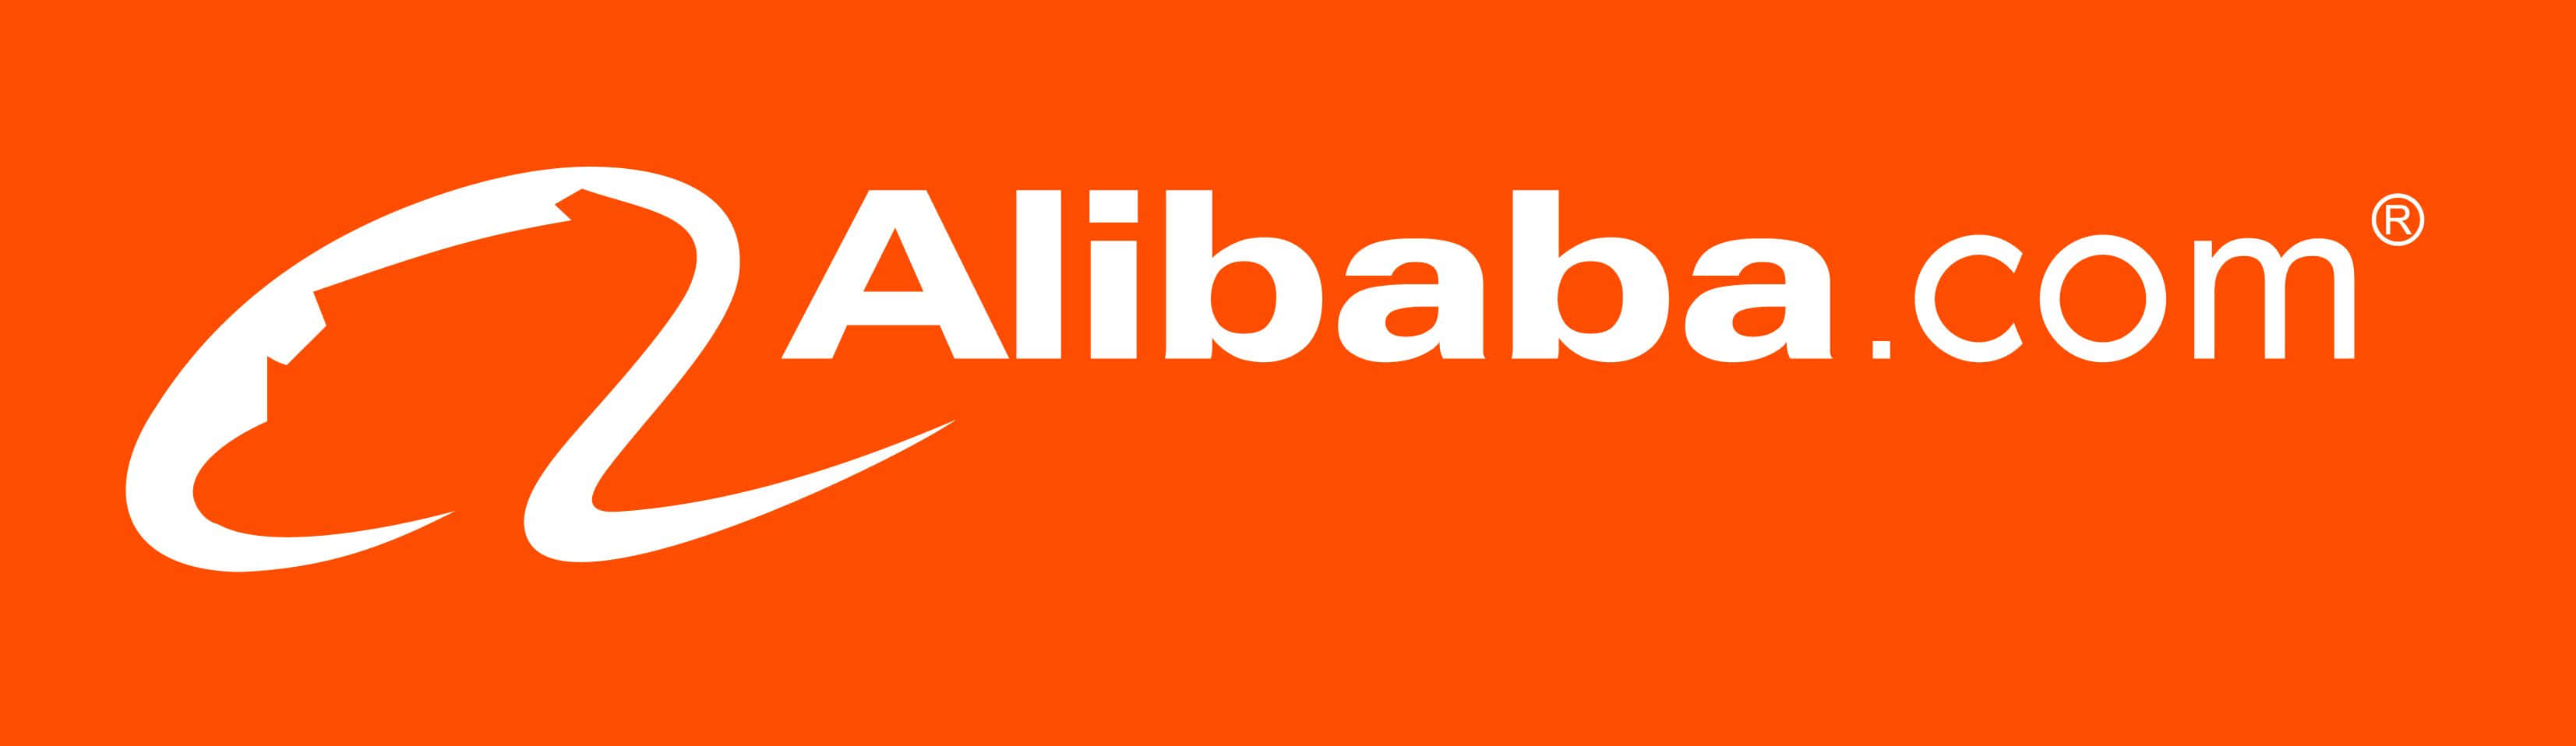 Logotipode Alibaba Com Sobre Un Fondo Naranja